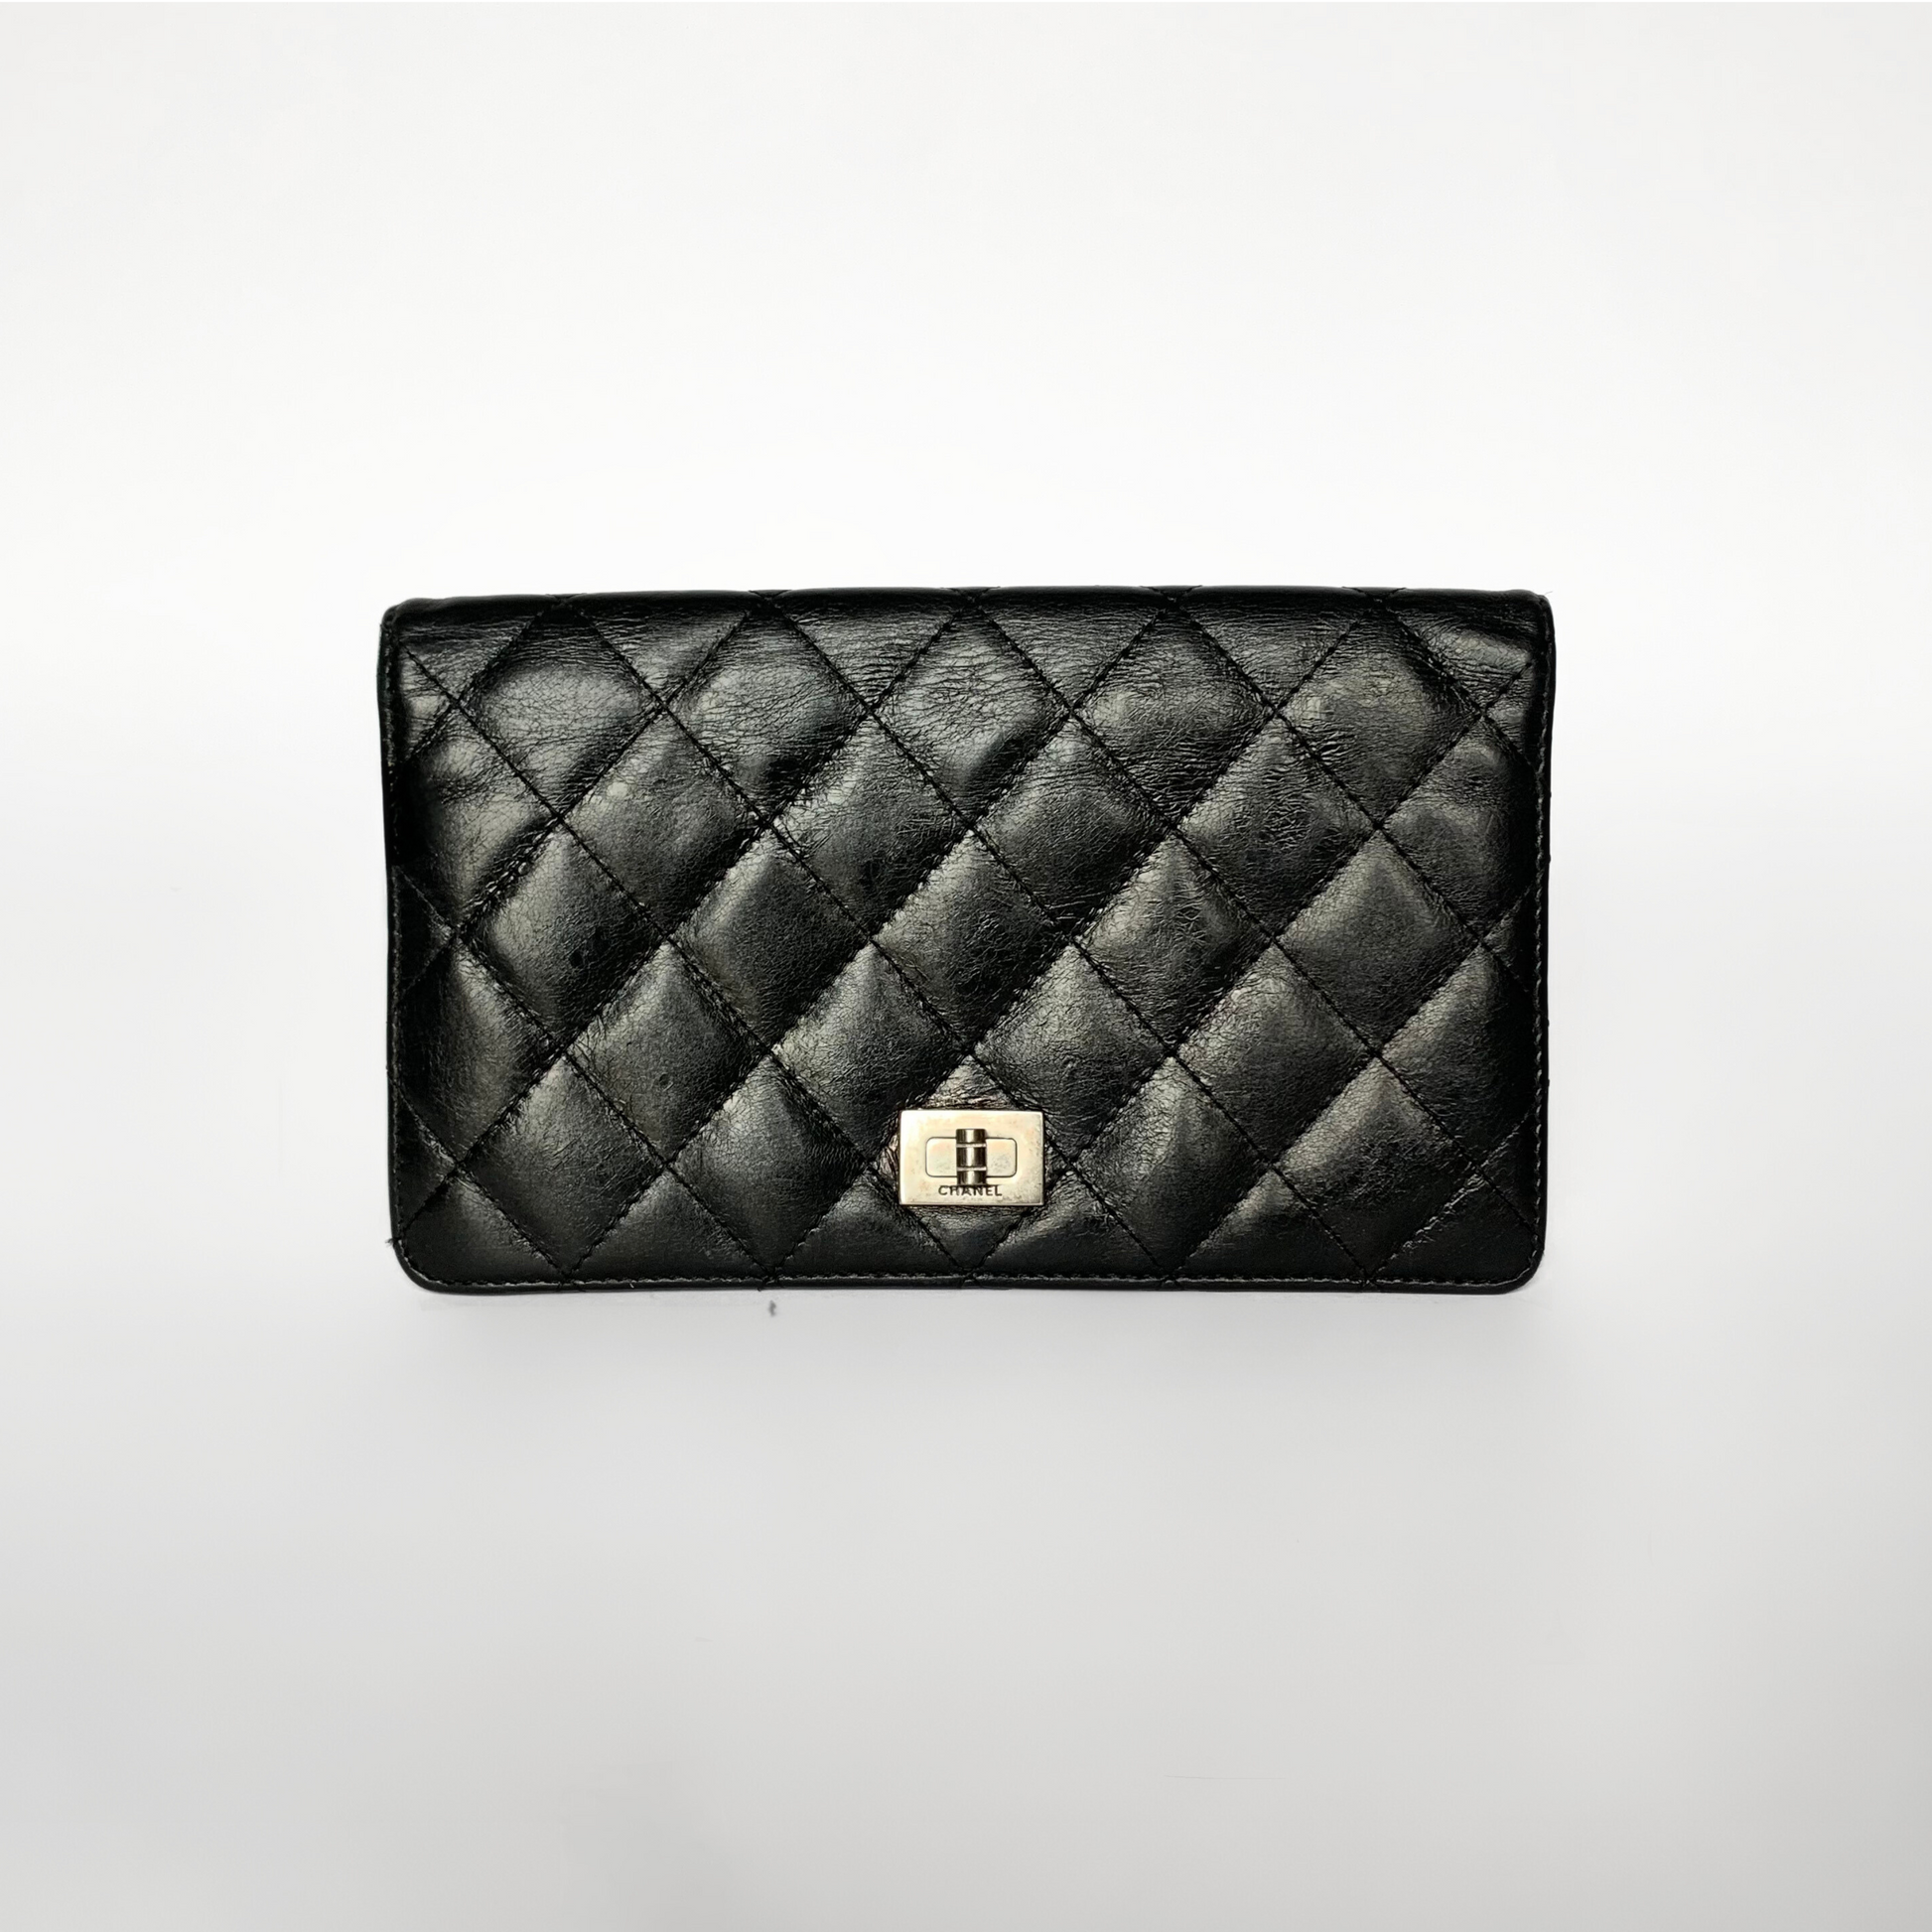 Chanel Chanel 2.55 Wallet Lambskin Leather - Wallets - Etoile Luxury Vintage